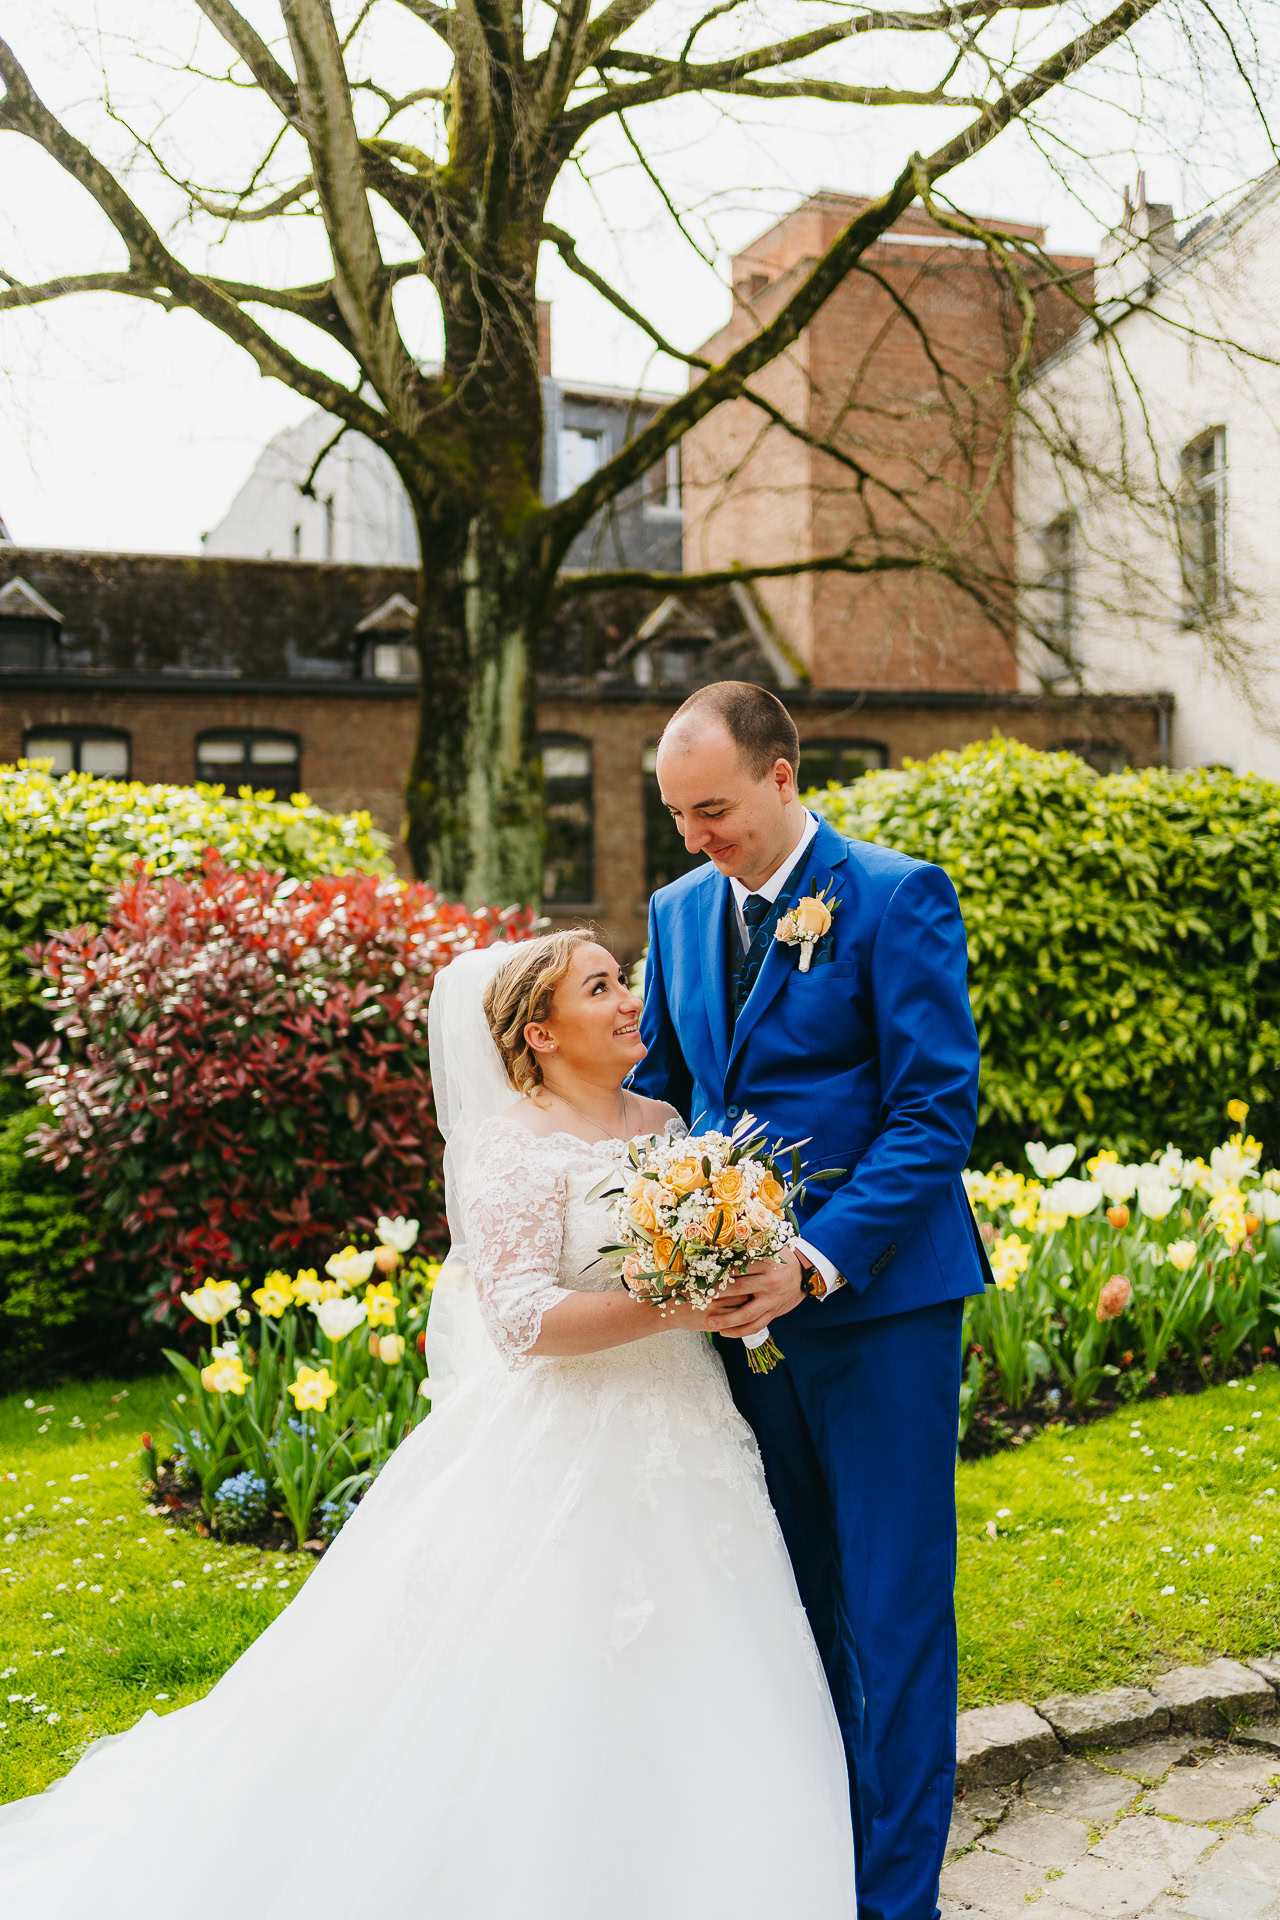 Une mariée en robe blanche et un marié en costume bleu se sourient, debout dans un jardin coloré avec des fleurs épanouies.